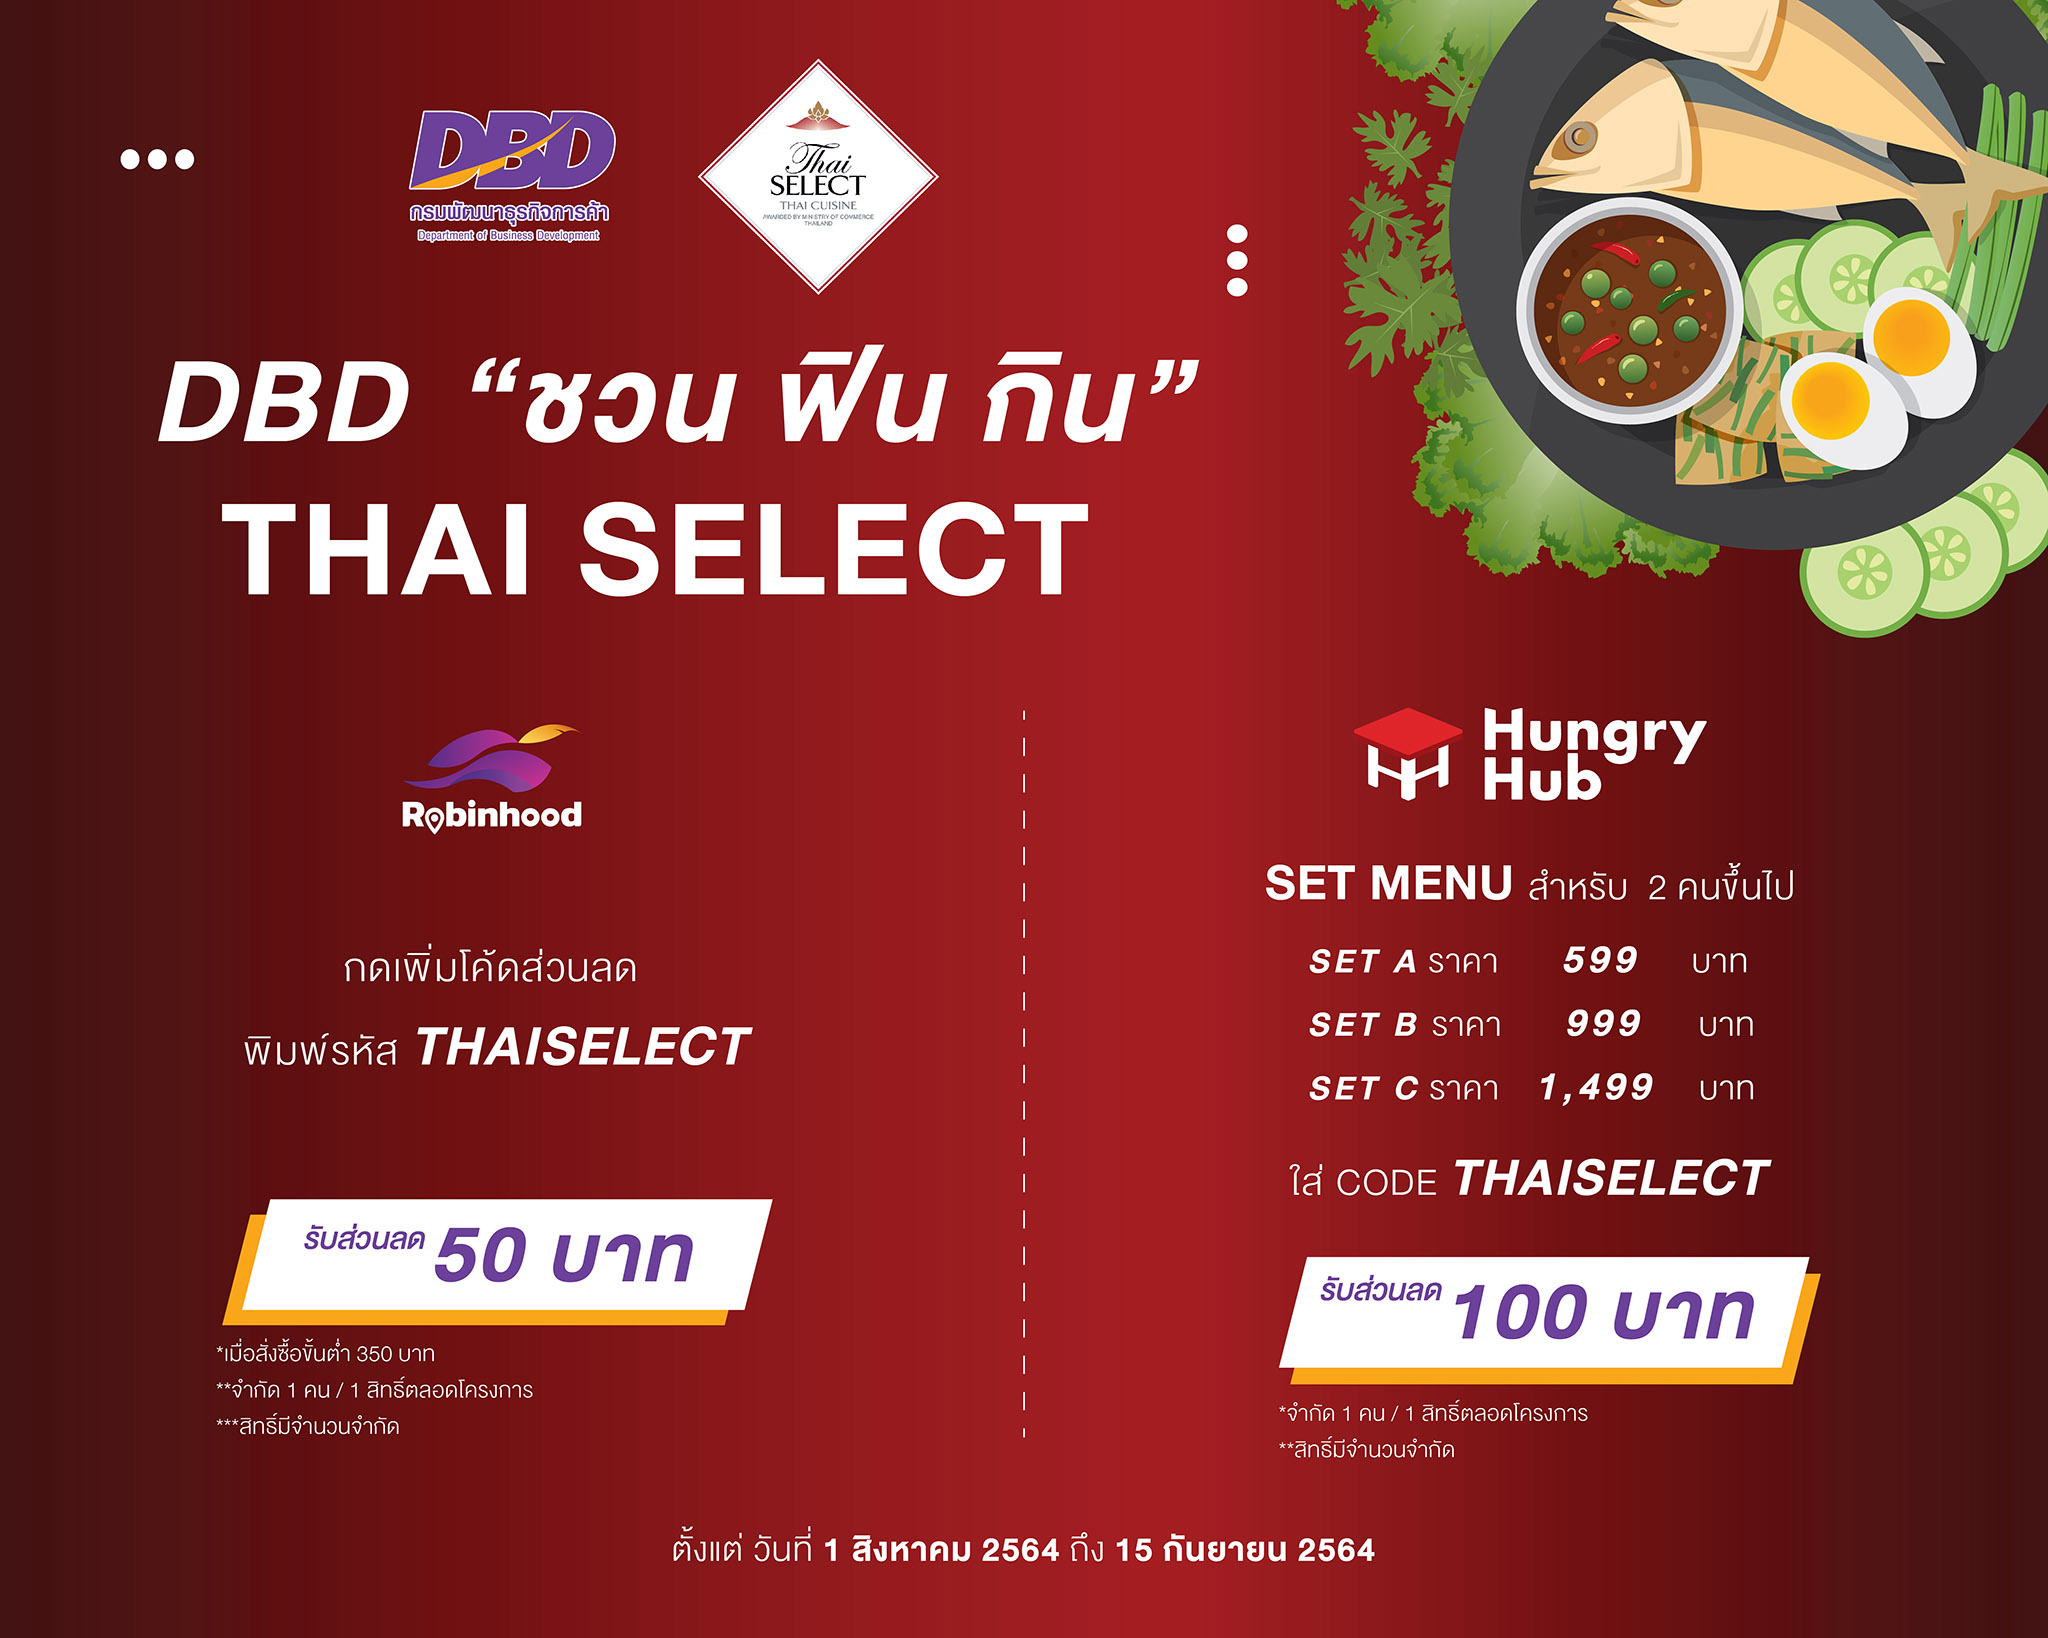 โรบินฮู้ด ฮังกรี้ฮับ ร่วม กรมพัฒน์ฯ จัดแคมเปญ "DBD ชวน ฟิน กิน Thai SELECT" “แจกโค้ดส่วนลด เซ็ทเมนูสุดคุ้ม ลดราคาอาหาร On Top 5-20%” ช่วยร้านอาหารไทย วันนี้ – 15 ก.ย. 64